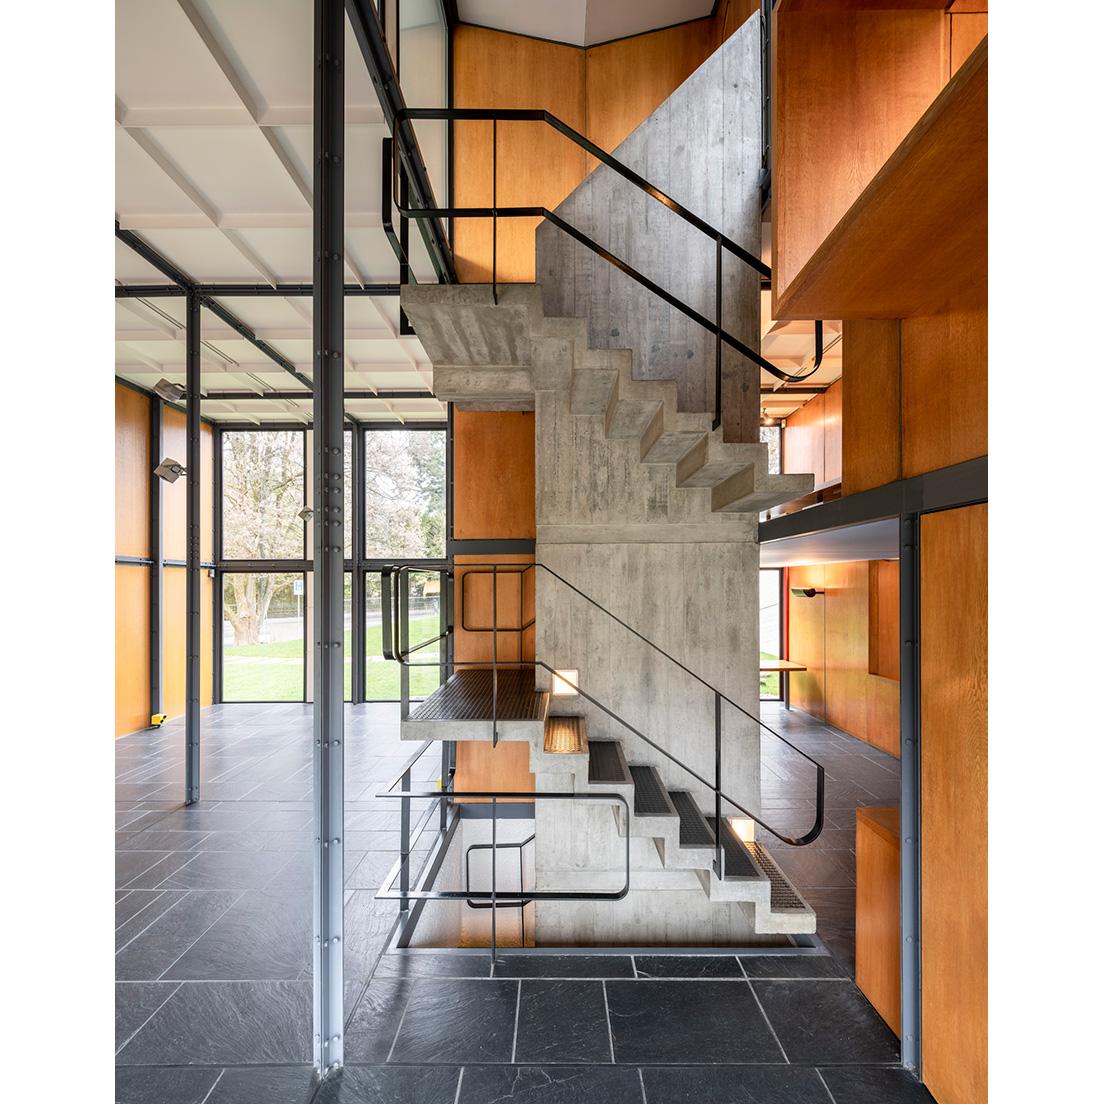 〈ル・コルビュジエ・センター〉内階段　Stairway, Pavillon Le Corbusier, 2019, Zurich, © ZHdK 